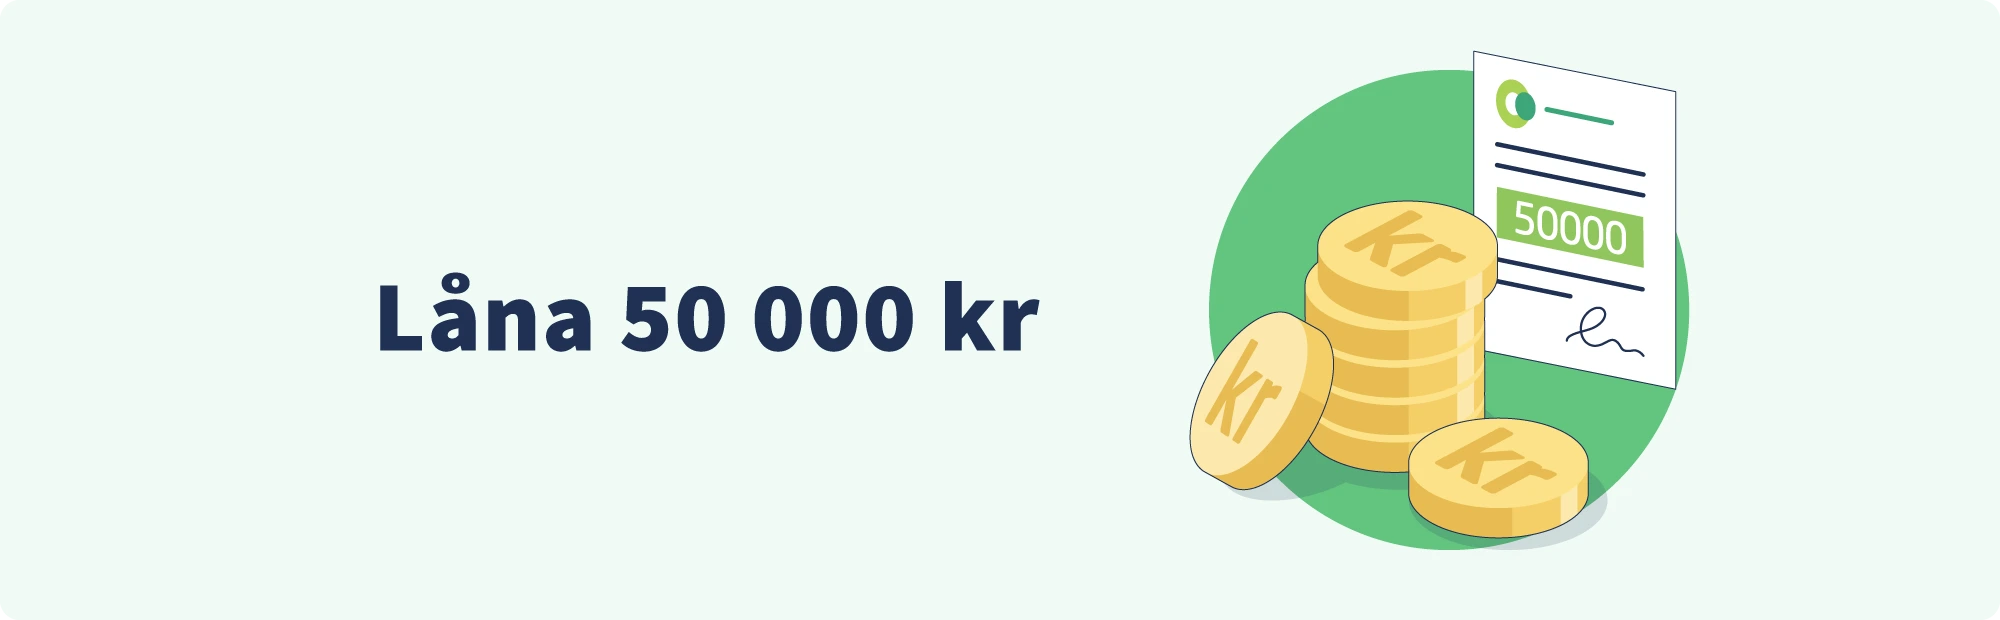 Låna 50 000 kr